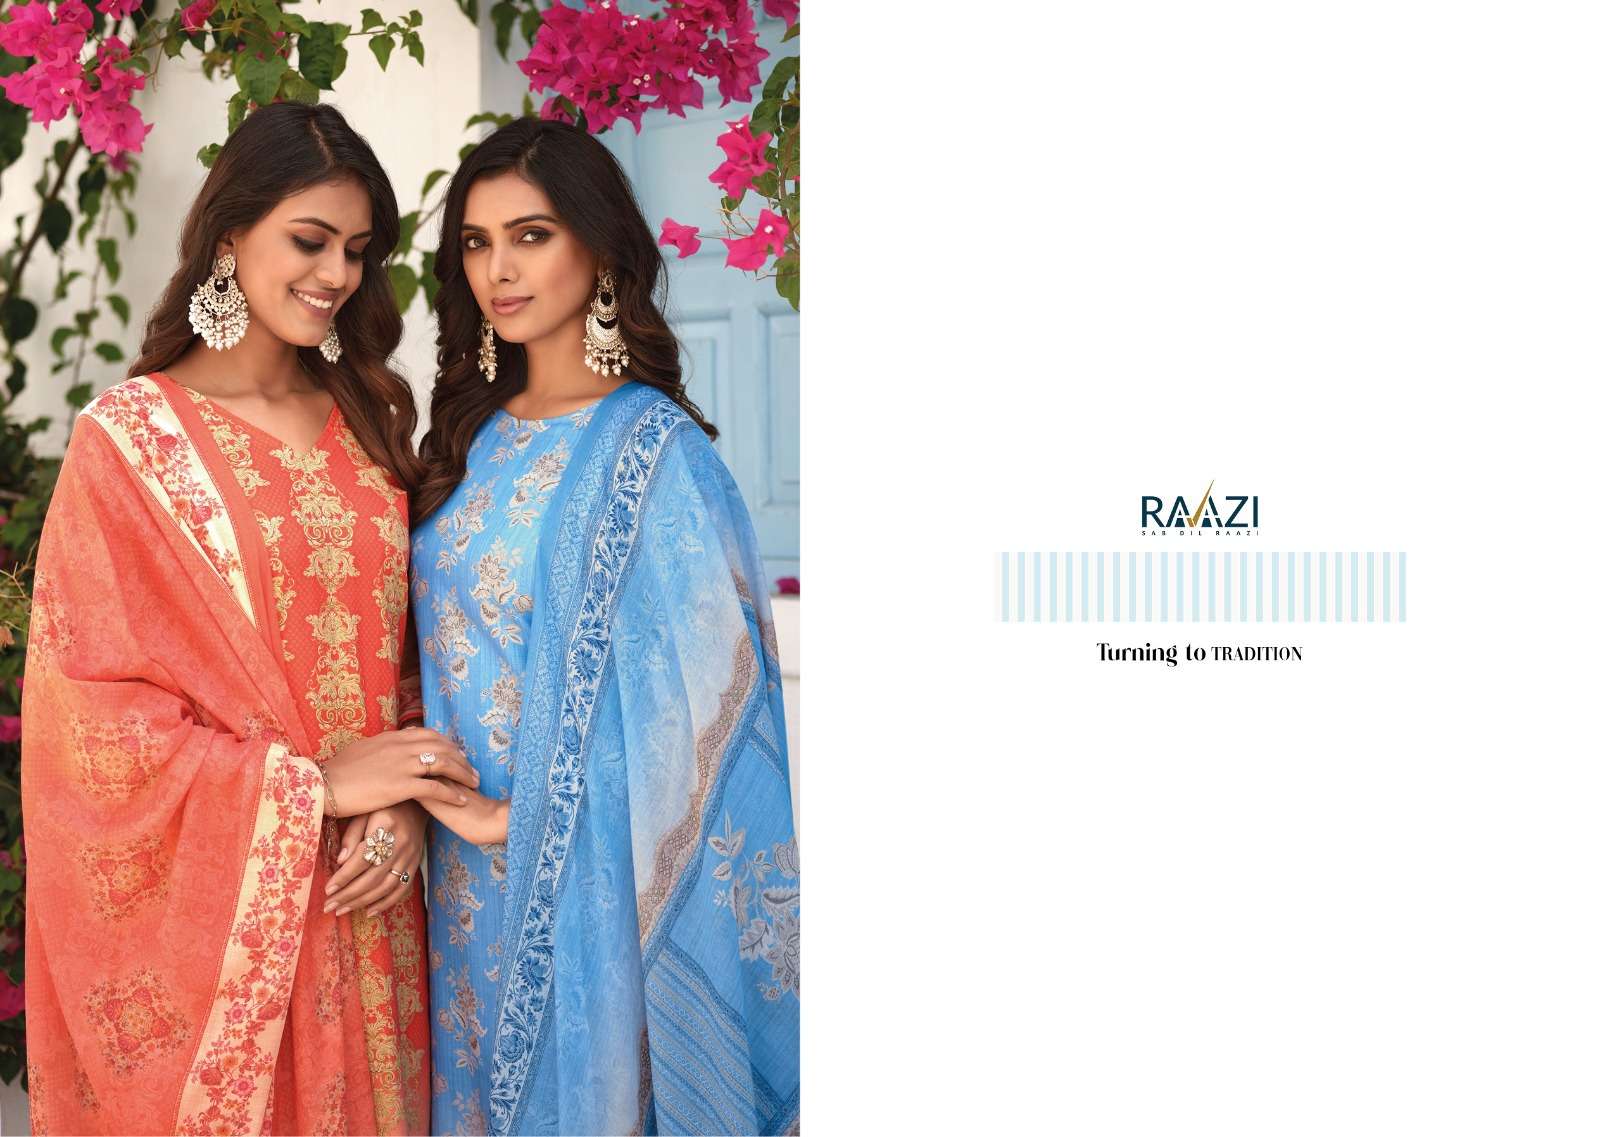 rama fashion stella 10001-10008 series stylish designer salwar kameez catalogue online supplier surat 